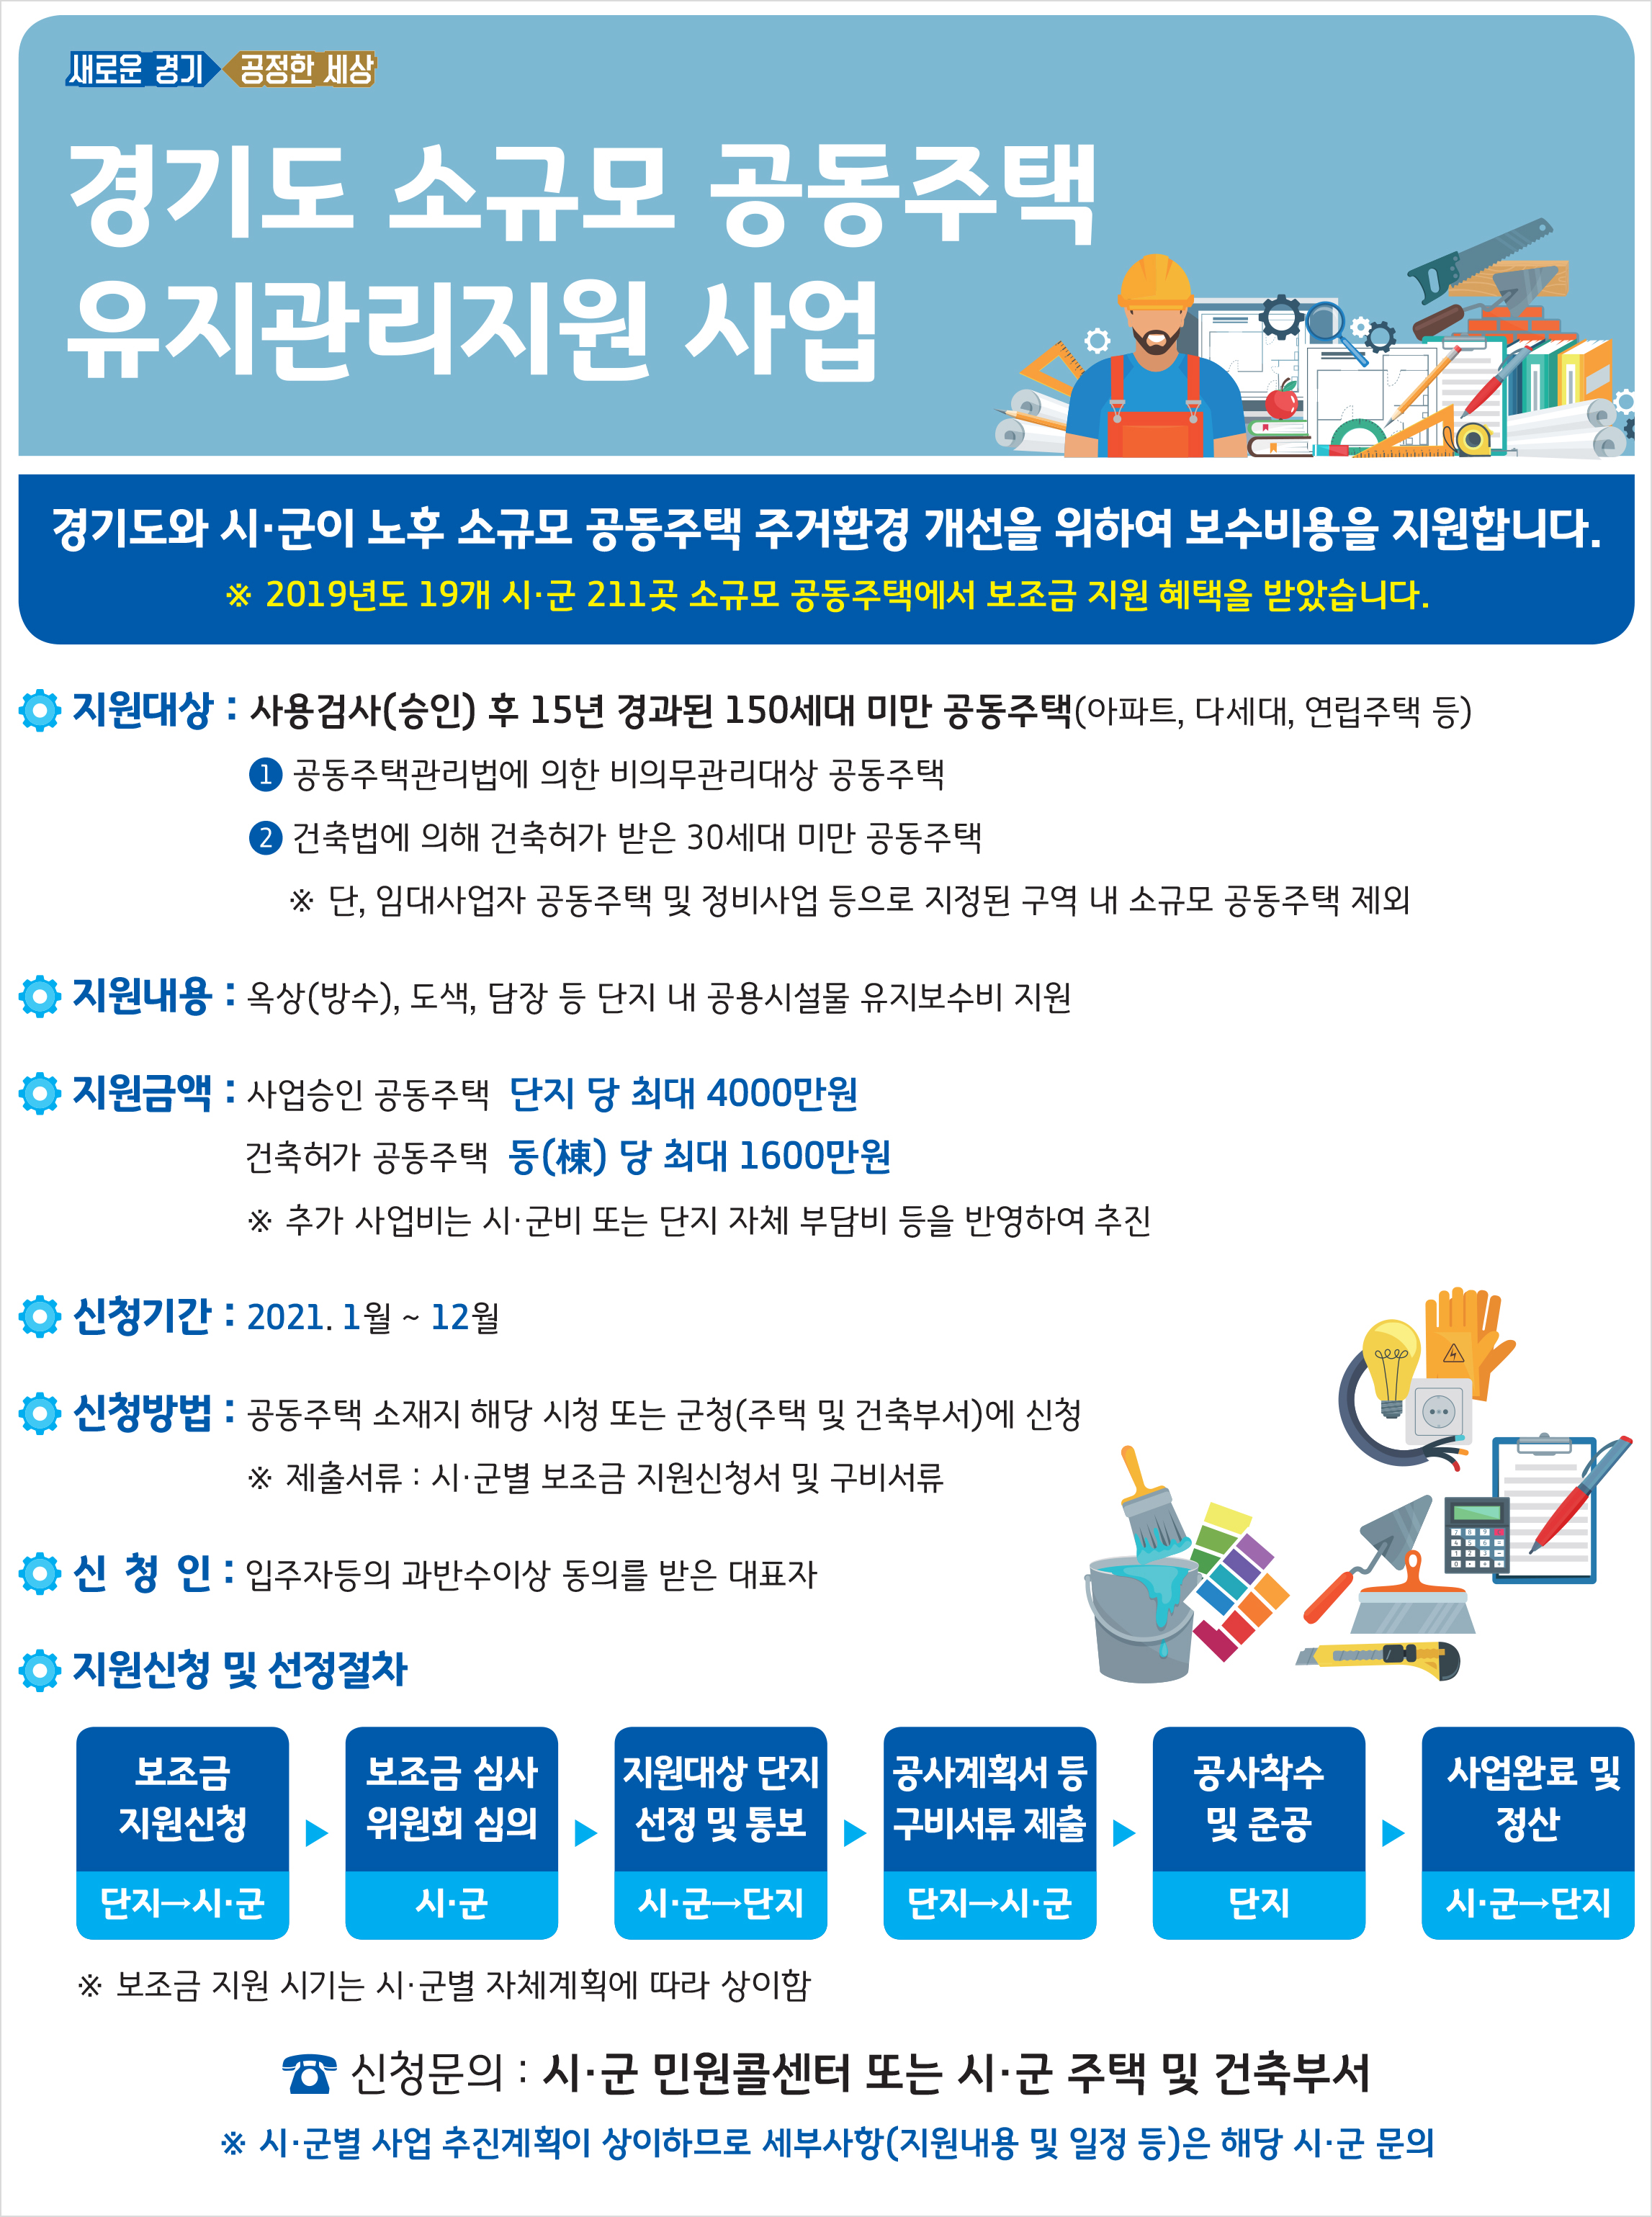 경기도 소규모 공동주택 유지관리지원 사업 안내 포스터